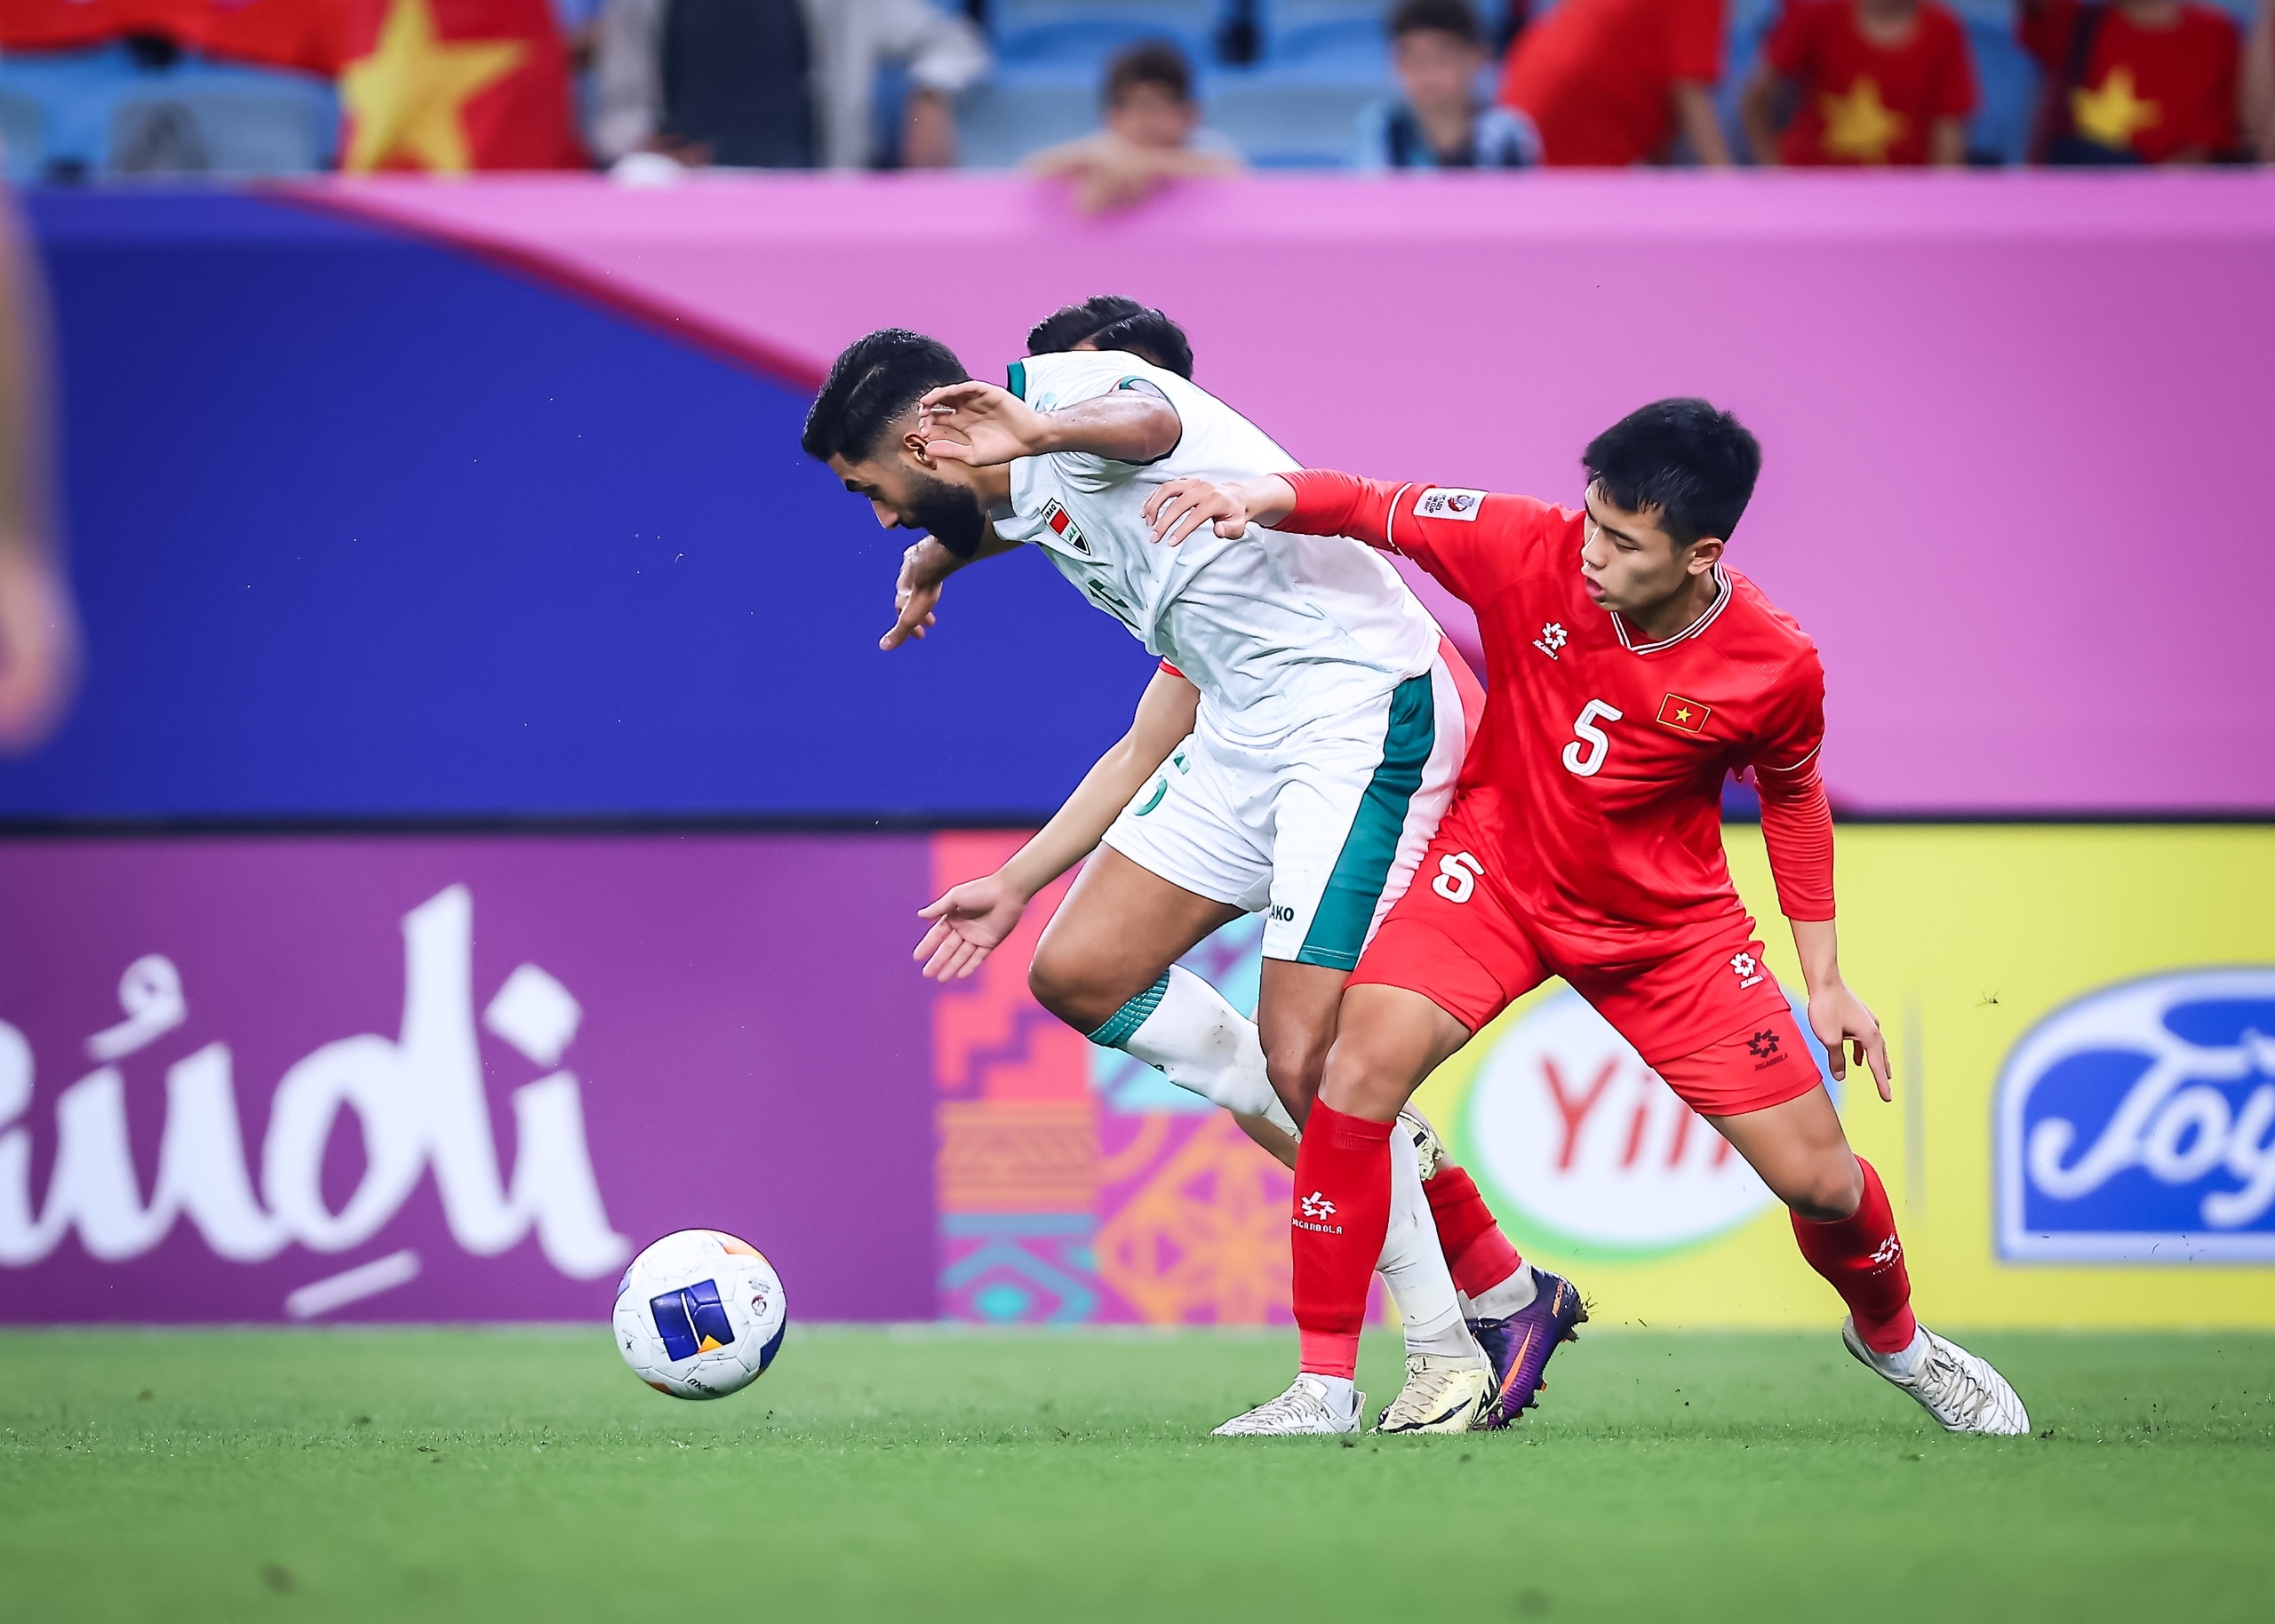 Hoang Anh Tuan 감독: '베트남 U.23 선수들이 너무 적게 플레이해 매우 걱정됩니다' - 사진 1